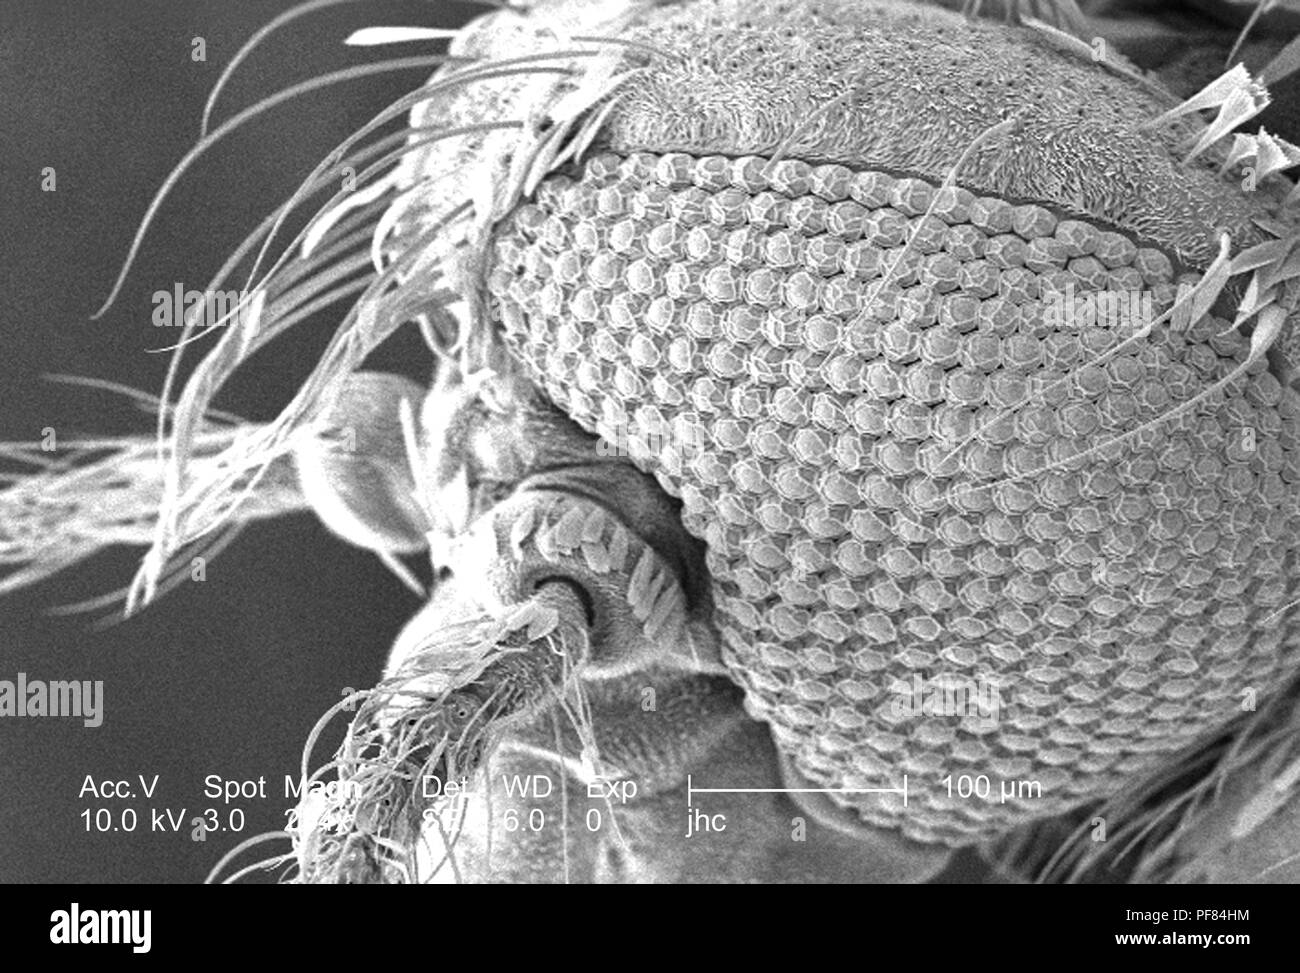 Ultrastrutturali morfologiche caratteristiche di superficie della testa di un Anopheles gambiae zanzara, rivelato nella 234x di scansione ingrandita al microscopio elettronico (SEM) immagine, 2006. Immagine cortesia di centri per il controllo delle malattie (CDC). () Foto Stock